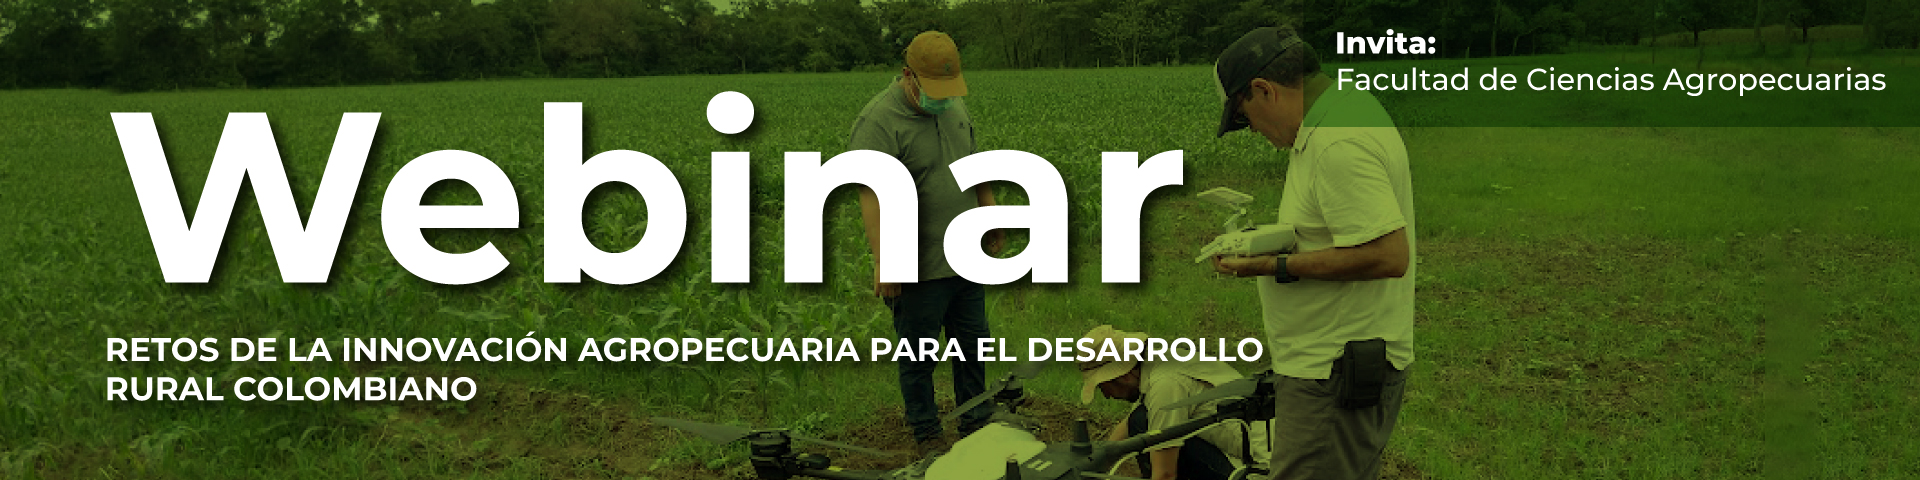 Retos de la innovación agropecuaria para el desarrollo rural colombiano